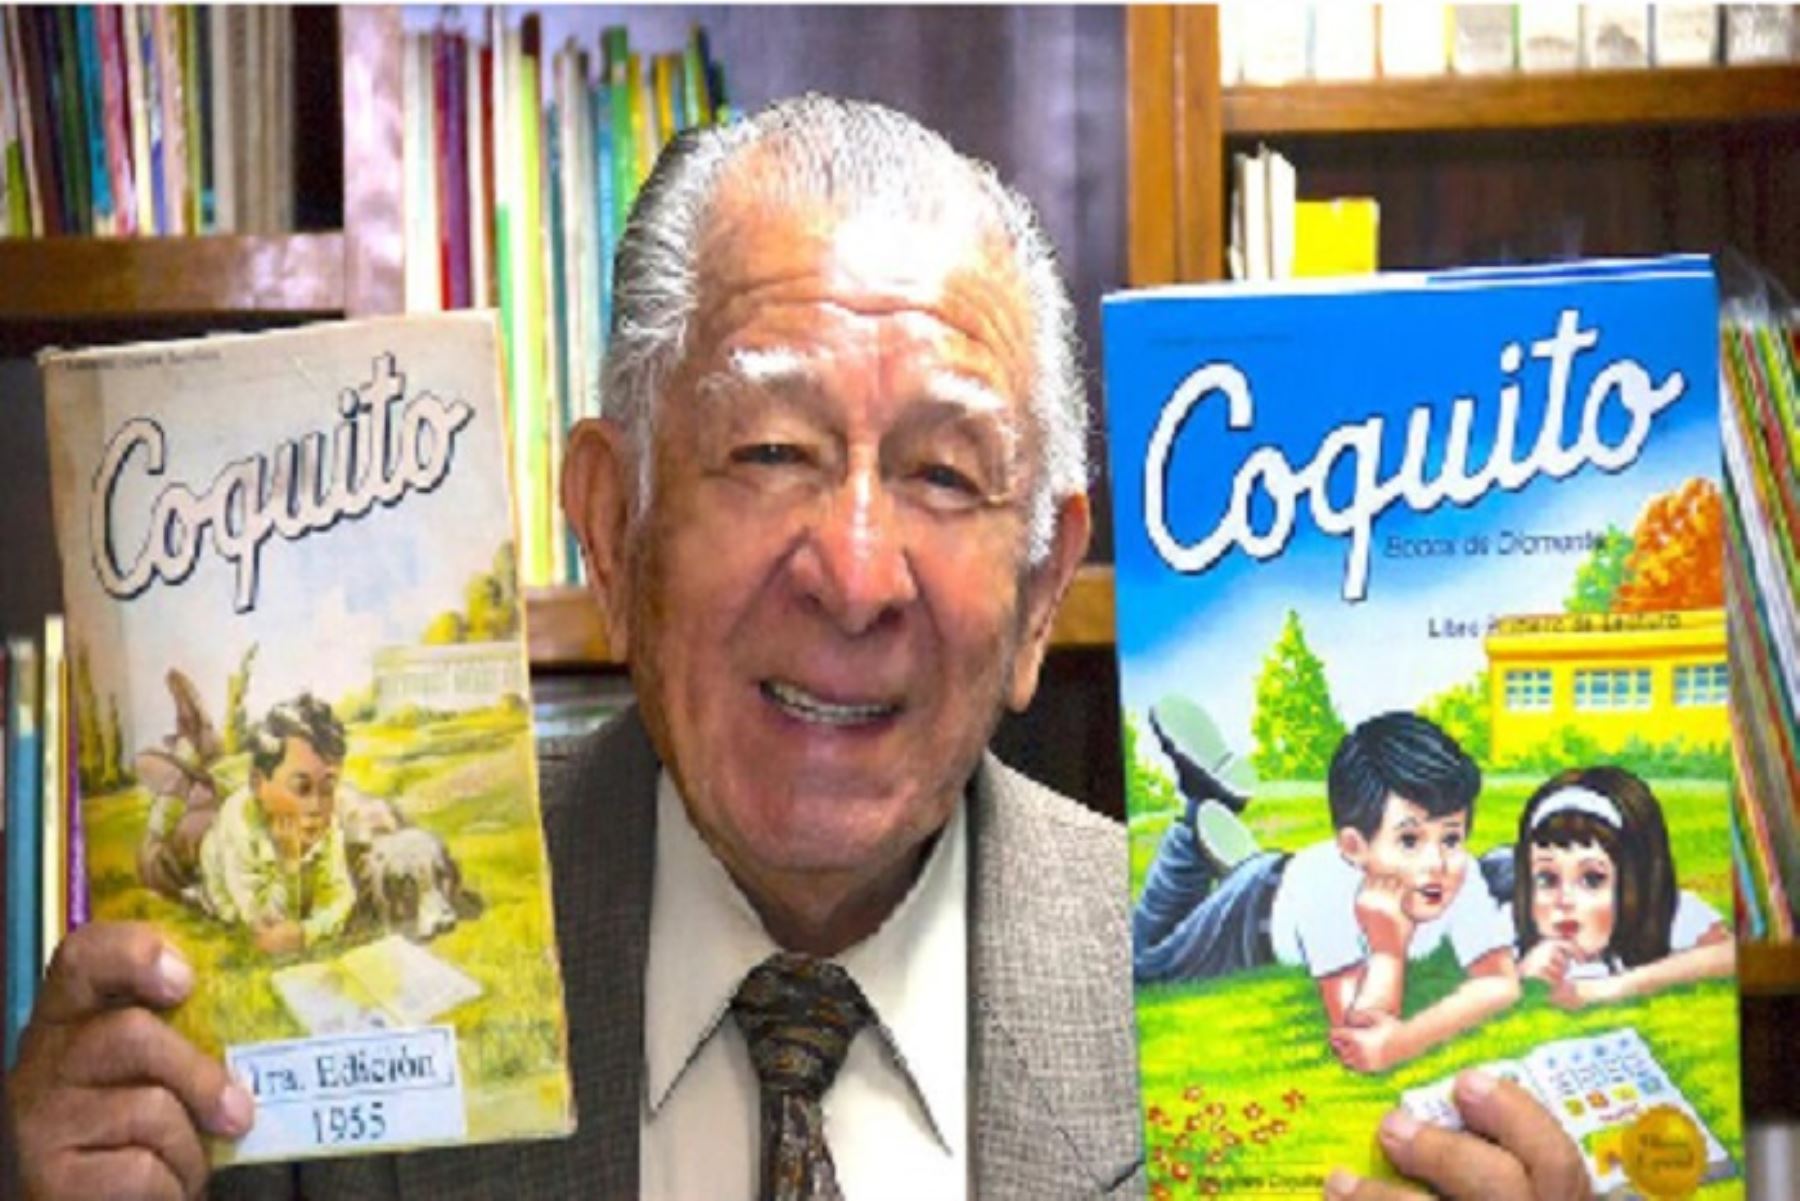 El libro Coquito, de Everardo Zapata Santillana, es empleado en 15 países de lengua española. Foto: Mincul